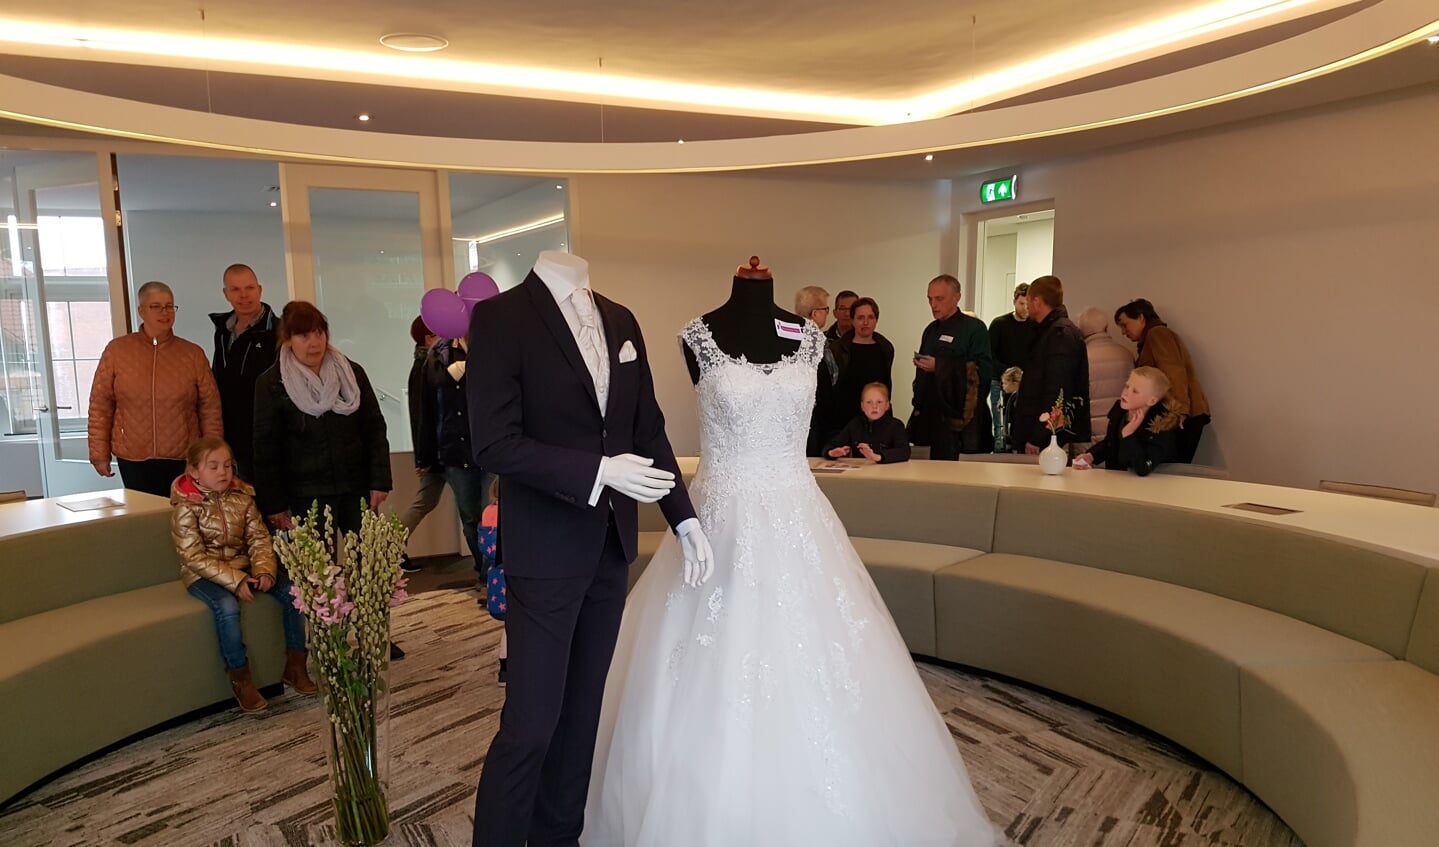 Veel belangstelling voor de nieuwe trouwzaal in het gemeentehuis van Oost Gelre. foto: Kyra Broshuis